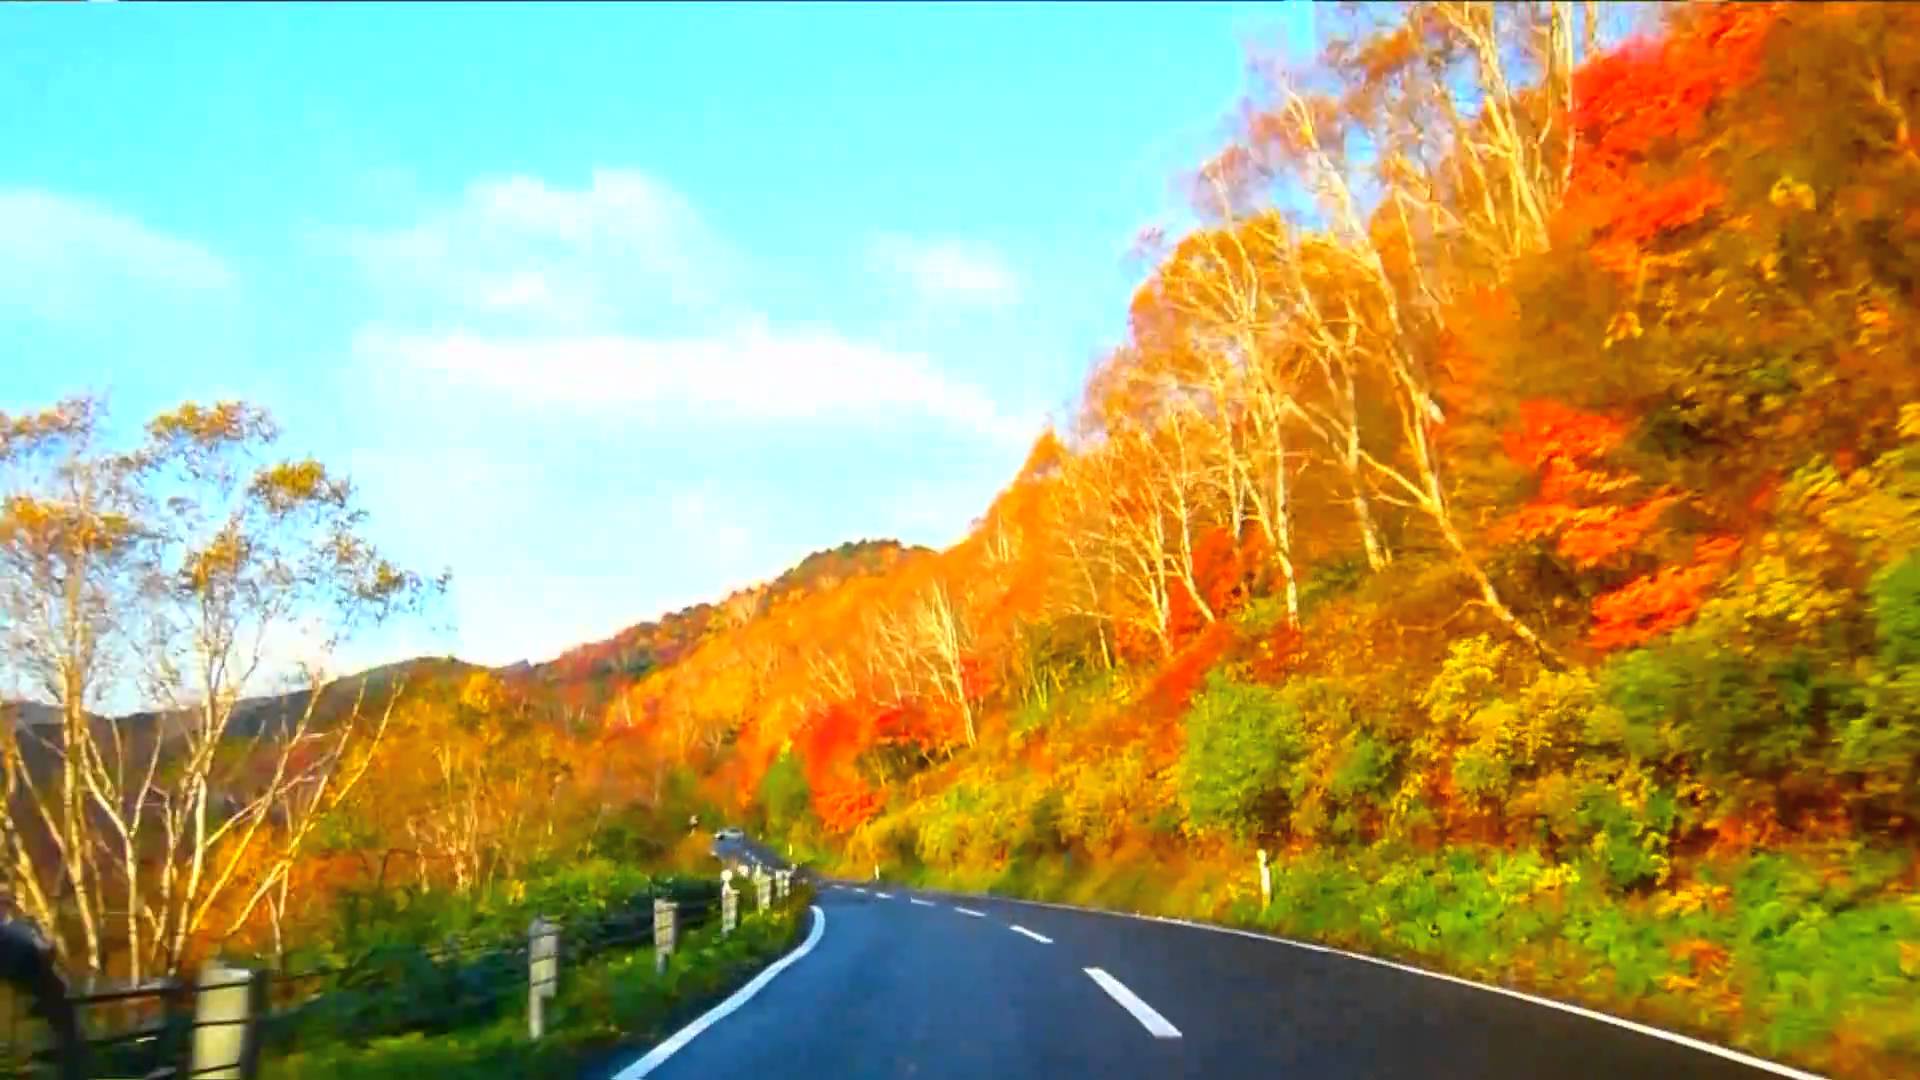 乐天旅游 福岛县与长野县坐享游客最受欢迎的红叶欣赏目的地第一第二名